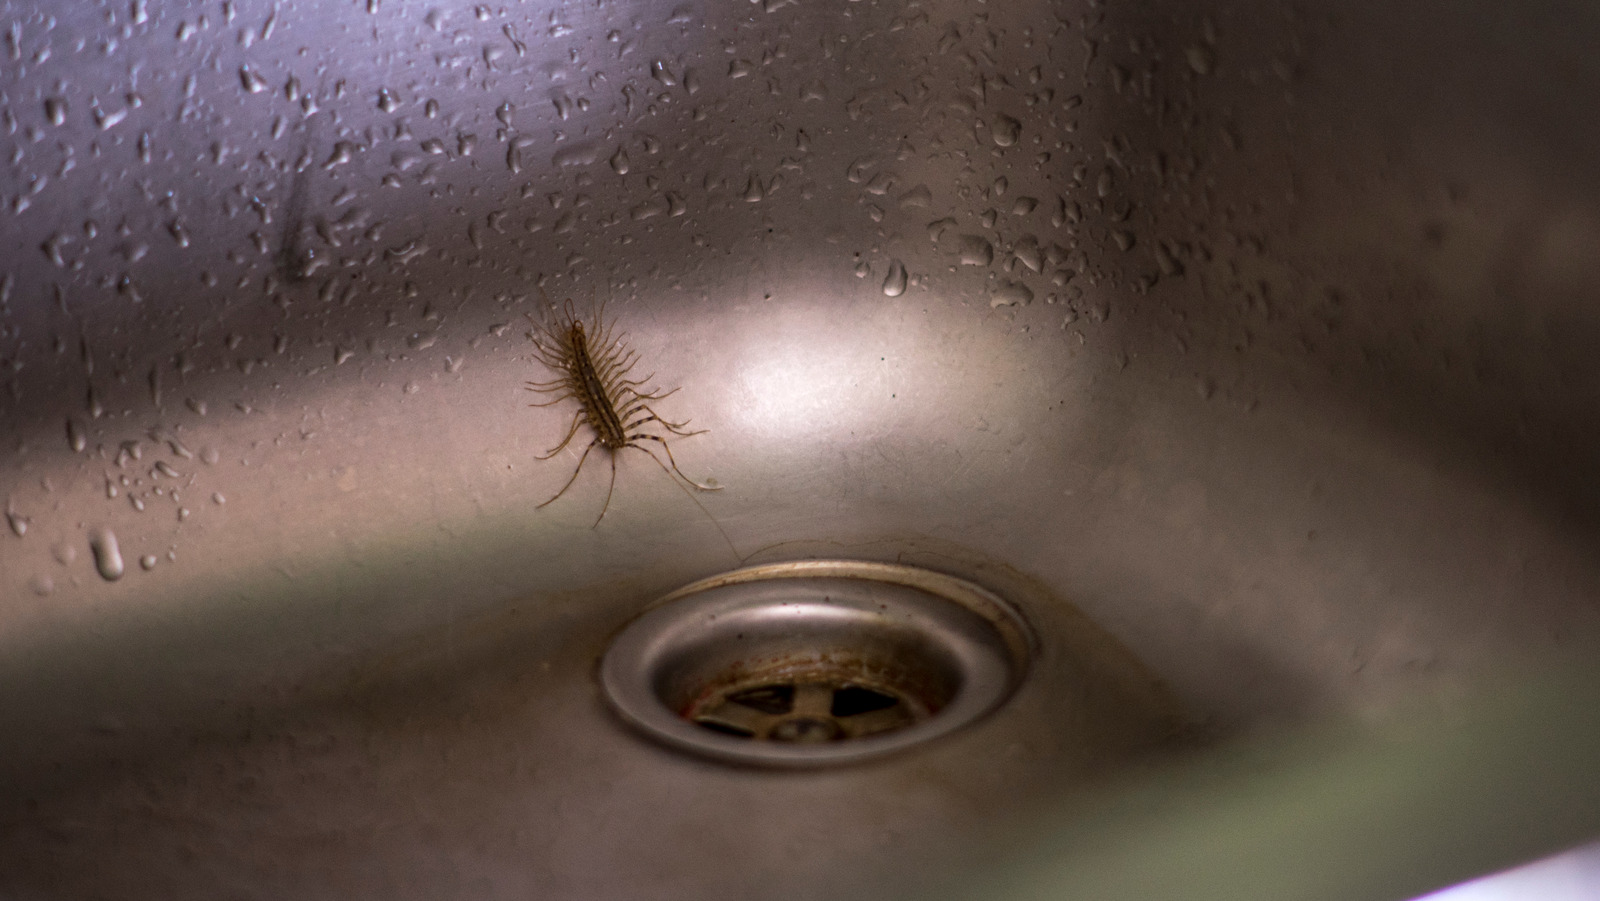 centipedes in kitchen sink